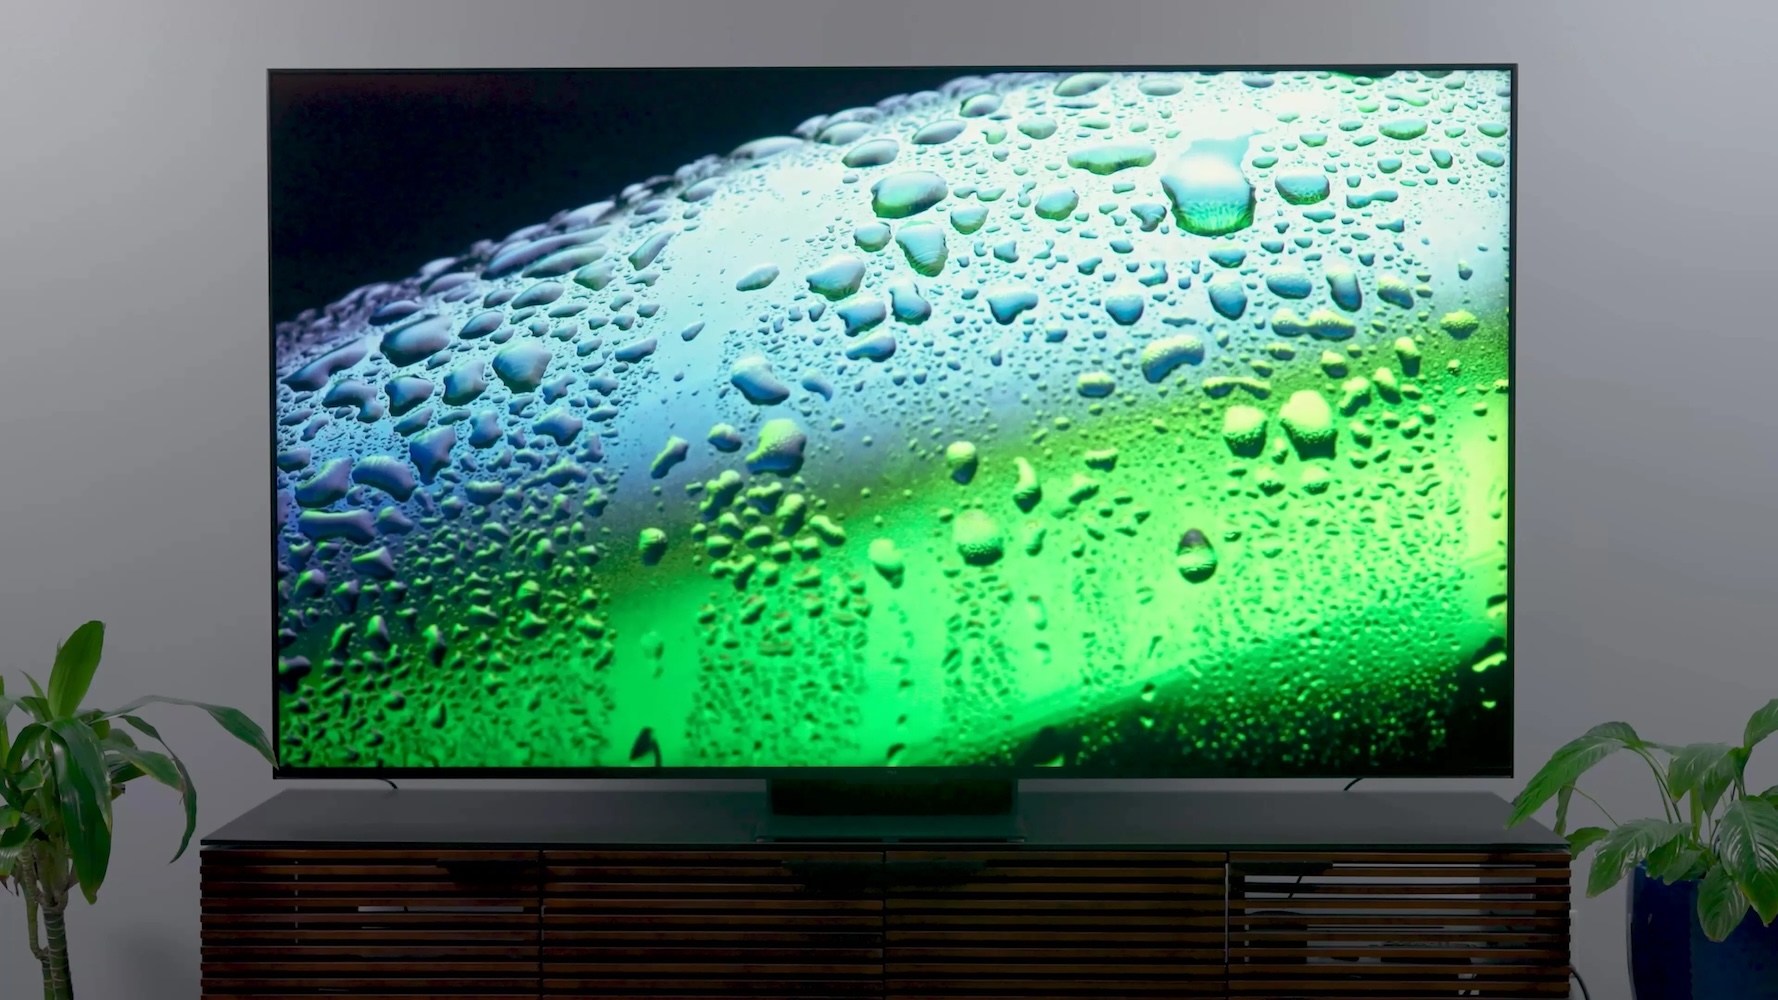 Los primeros televisores Philips OLED de 2023, ya disponibles en Europa